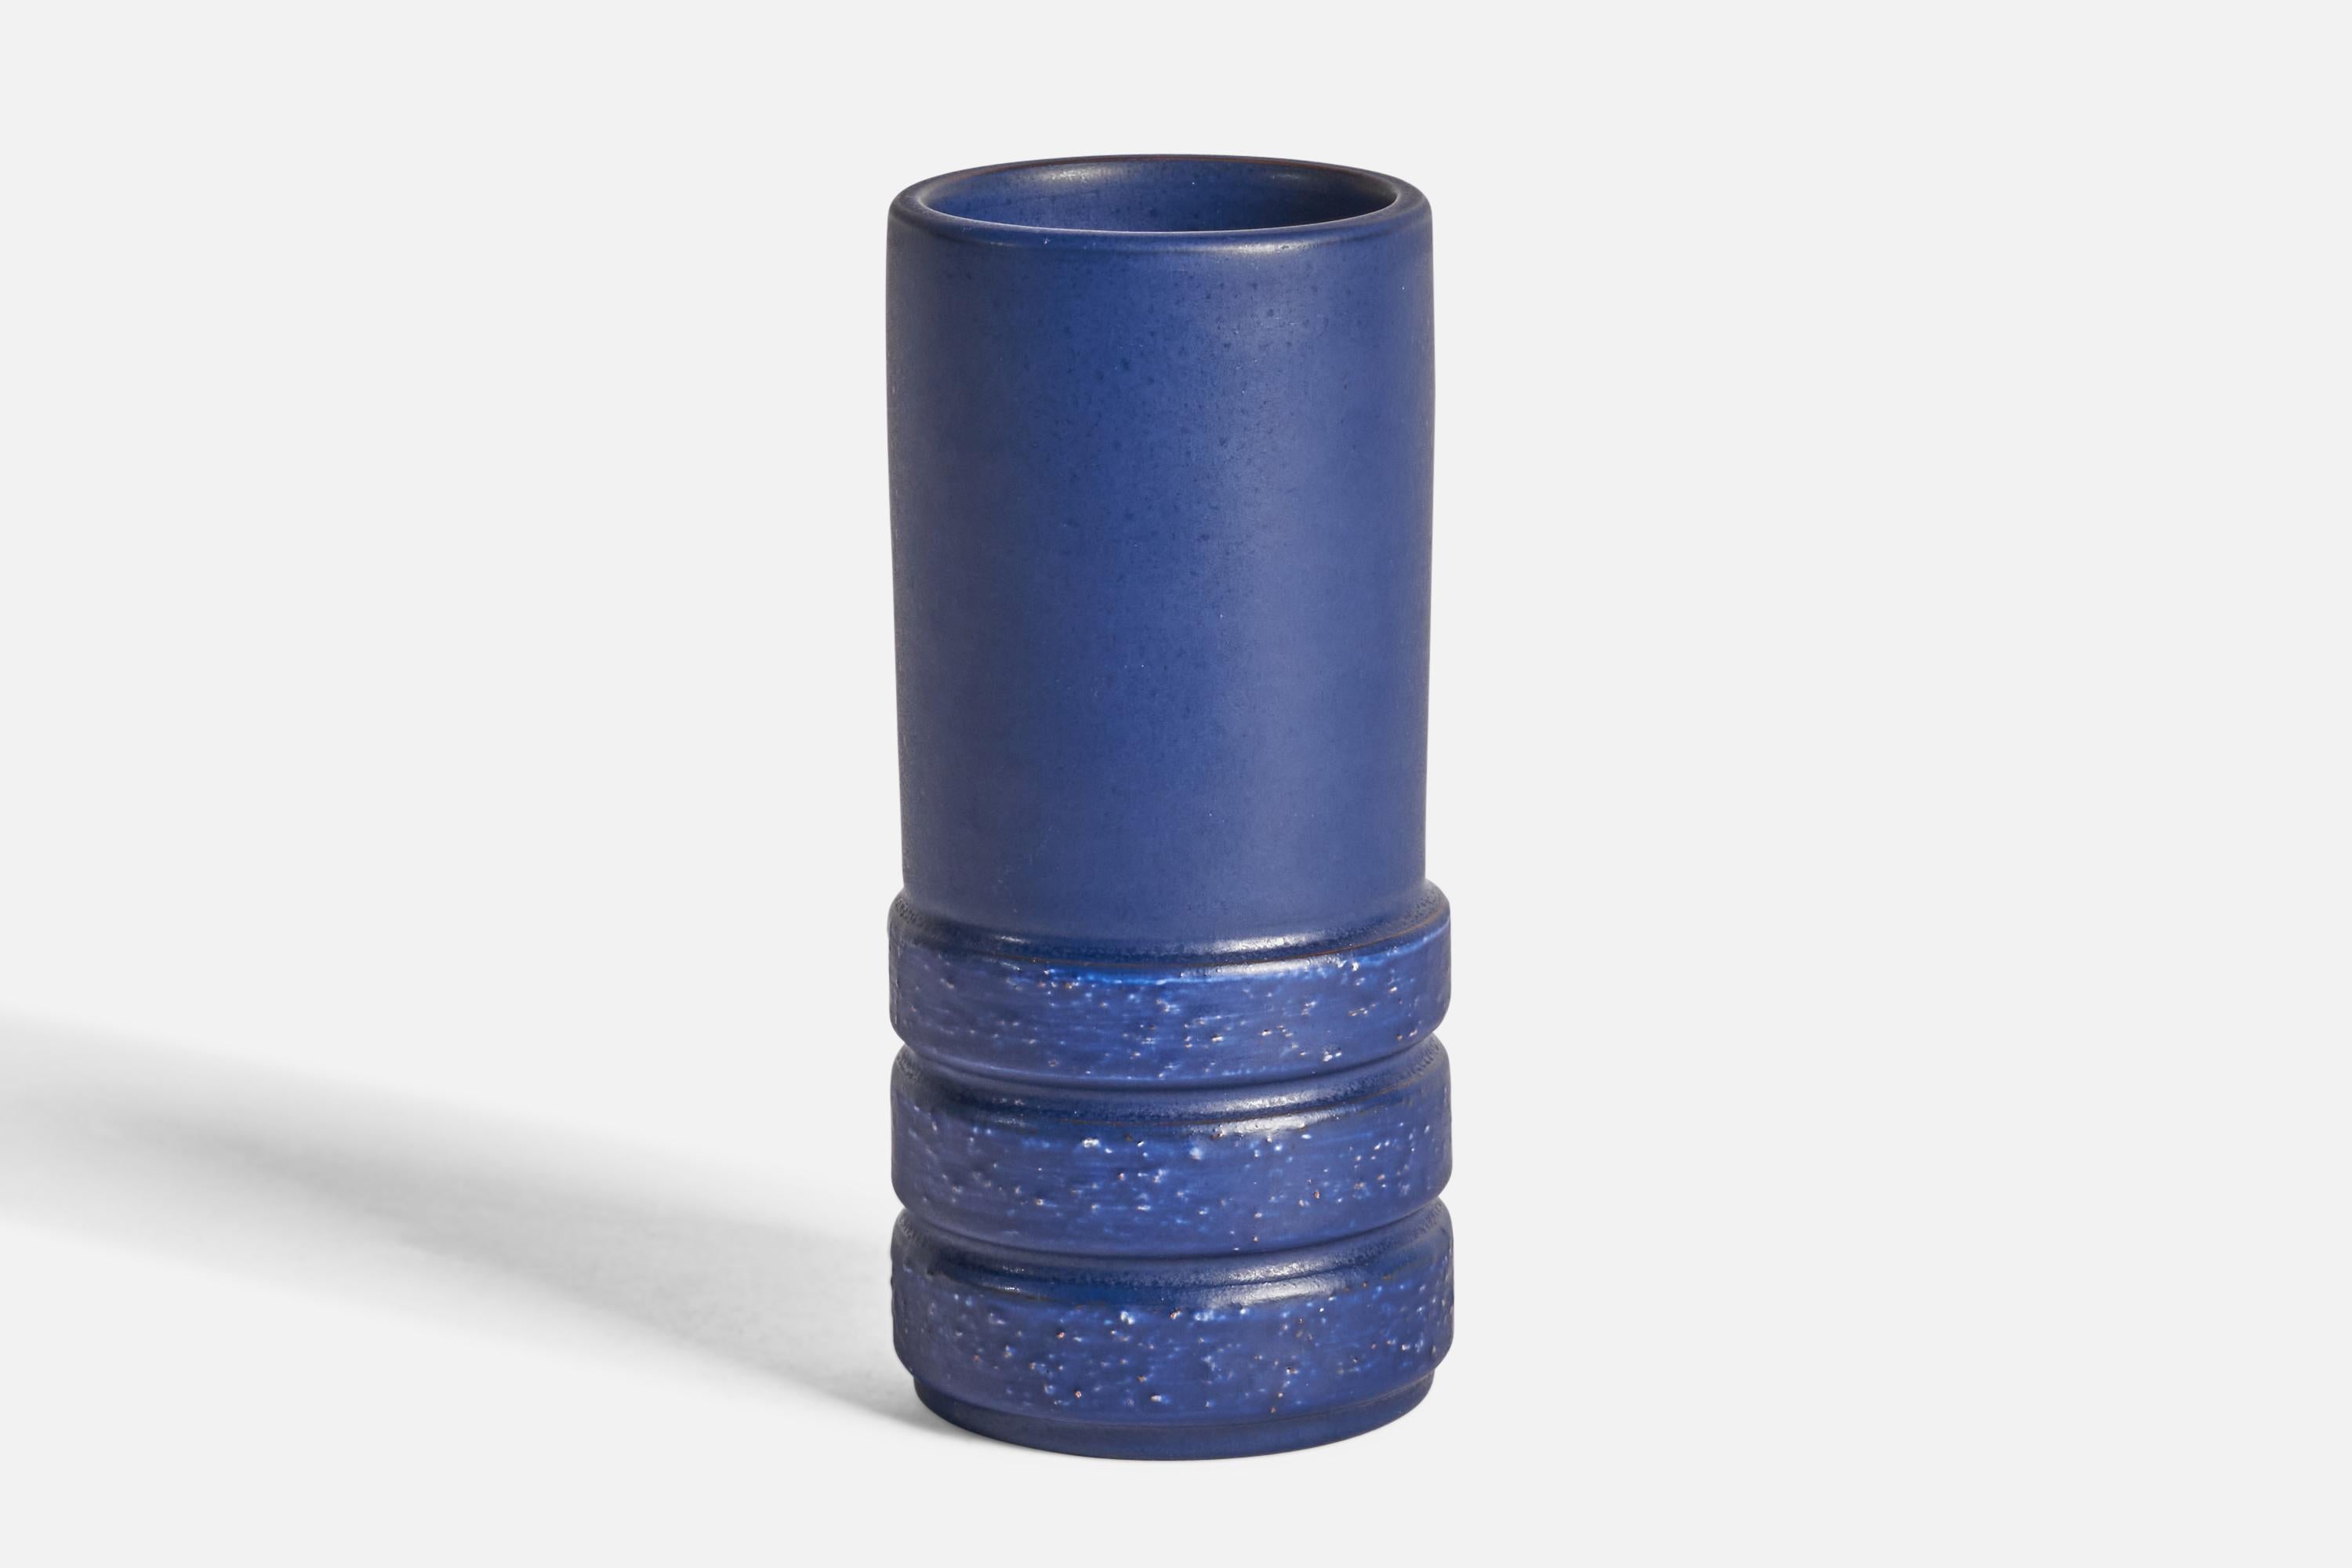 A blue-glazed earthenware vase designed by Jerk Werkmäster and produced by Nittsjö, Sweden, c. 1930s.

“NITTSJÖ HAND MADE IN SWEDEN” on bottom